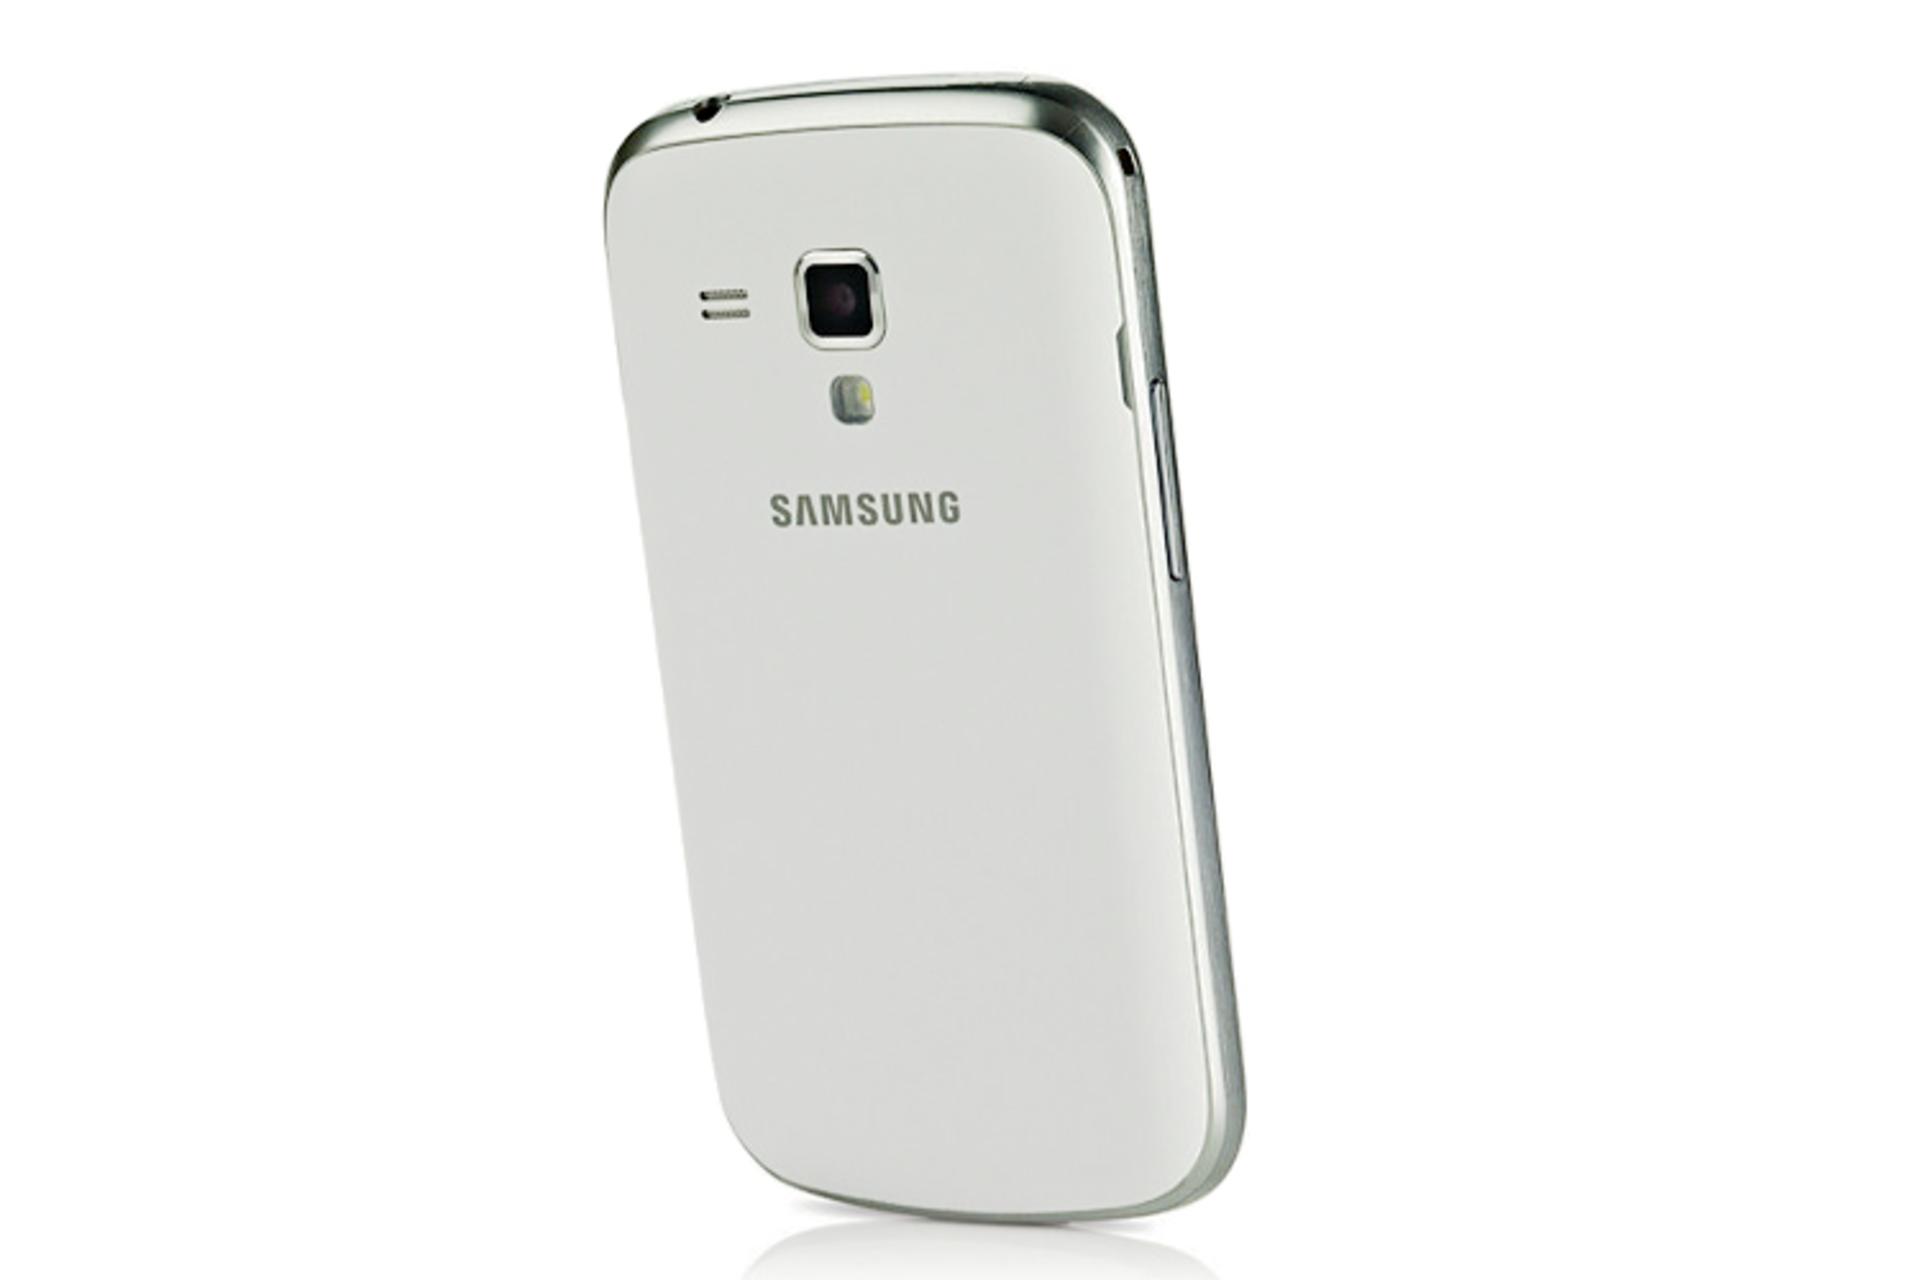 دوربین گلکسی ایس 2 سامسونگ Samsung Galaxy Ace II X S7560M